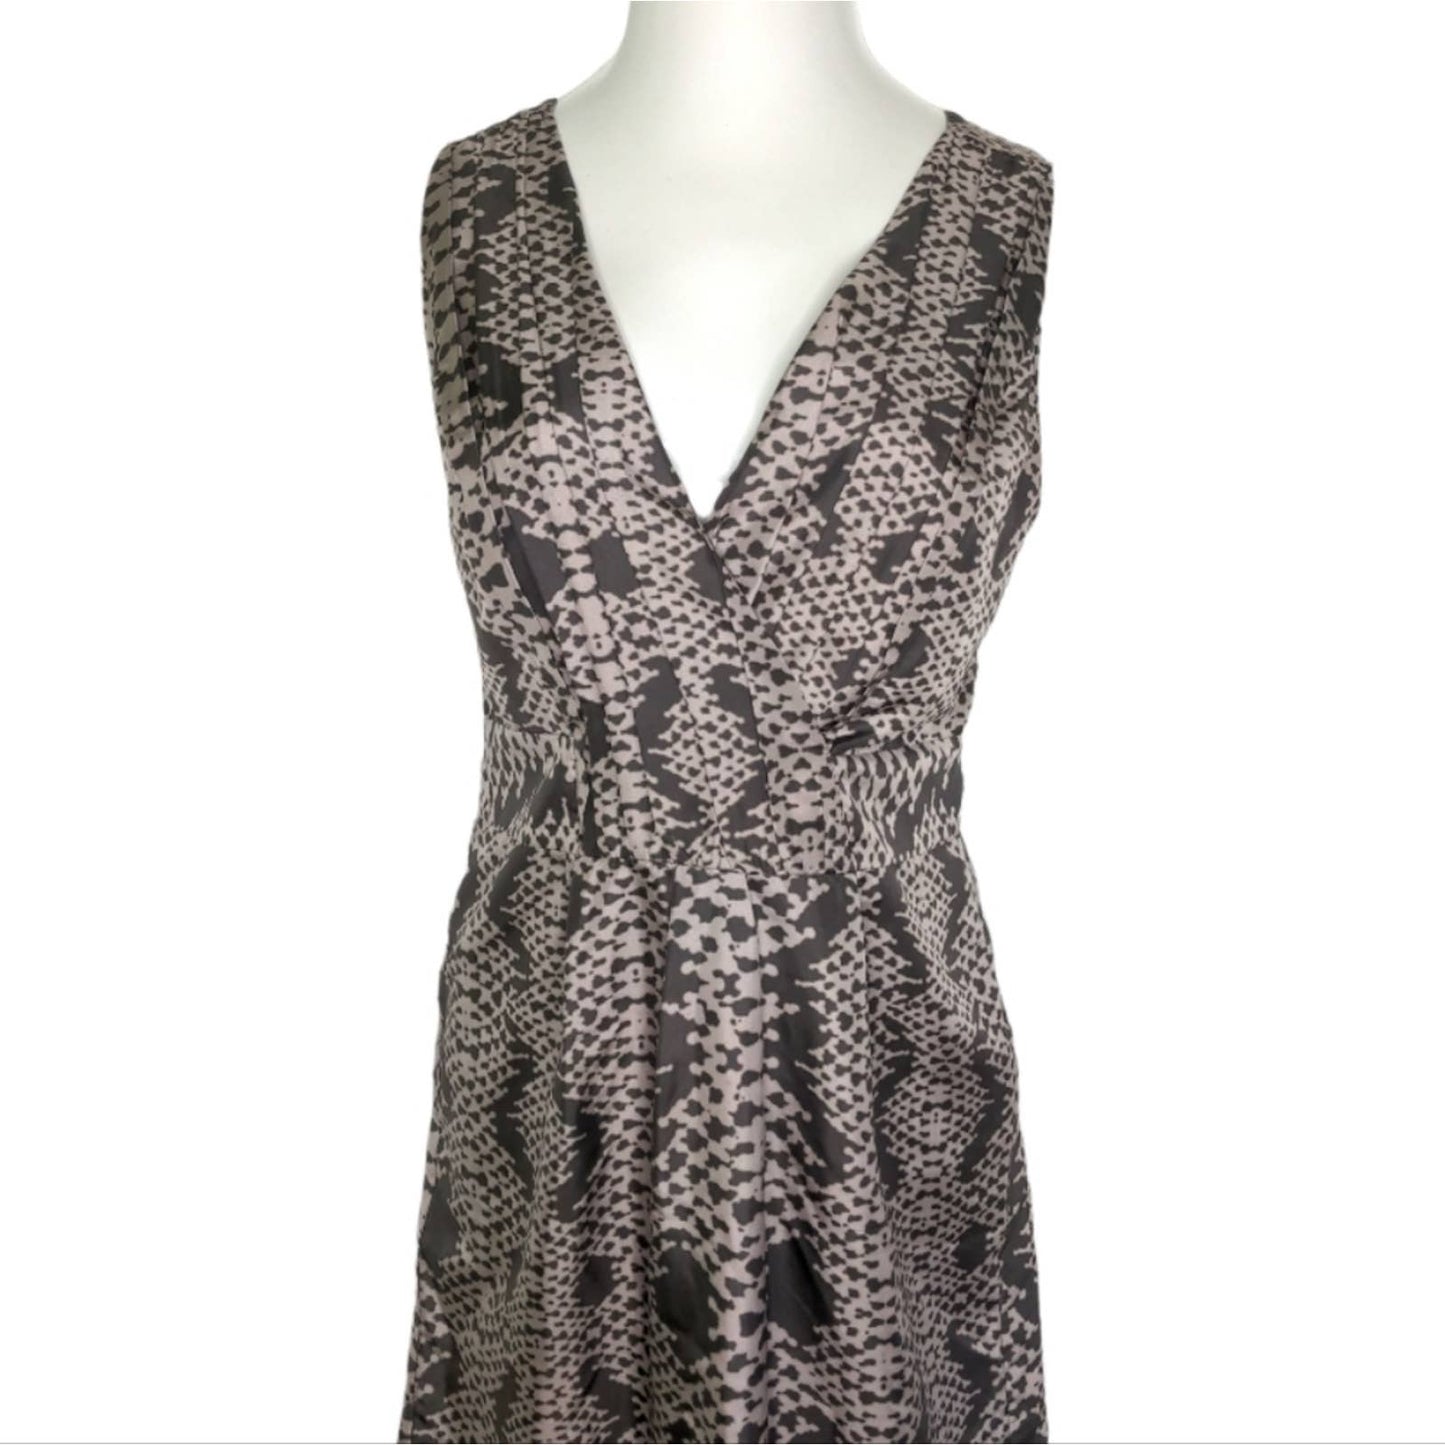 BANANA REPUBLIC Tan Brown Snakeskin Print Silk Faux Dress Size 14